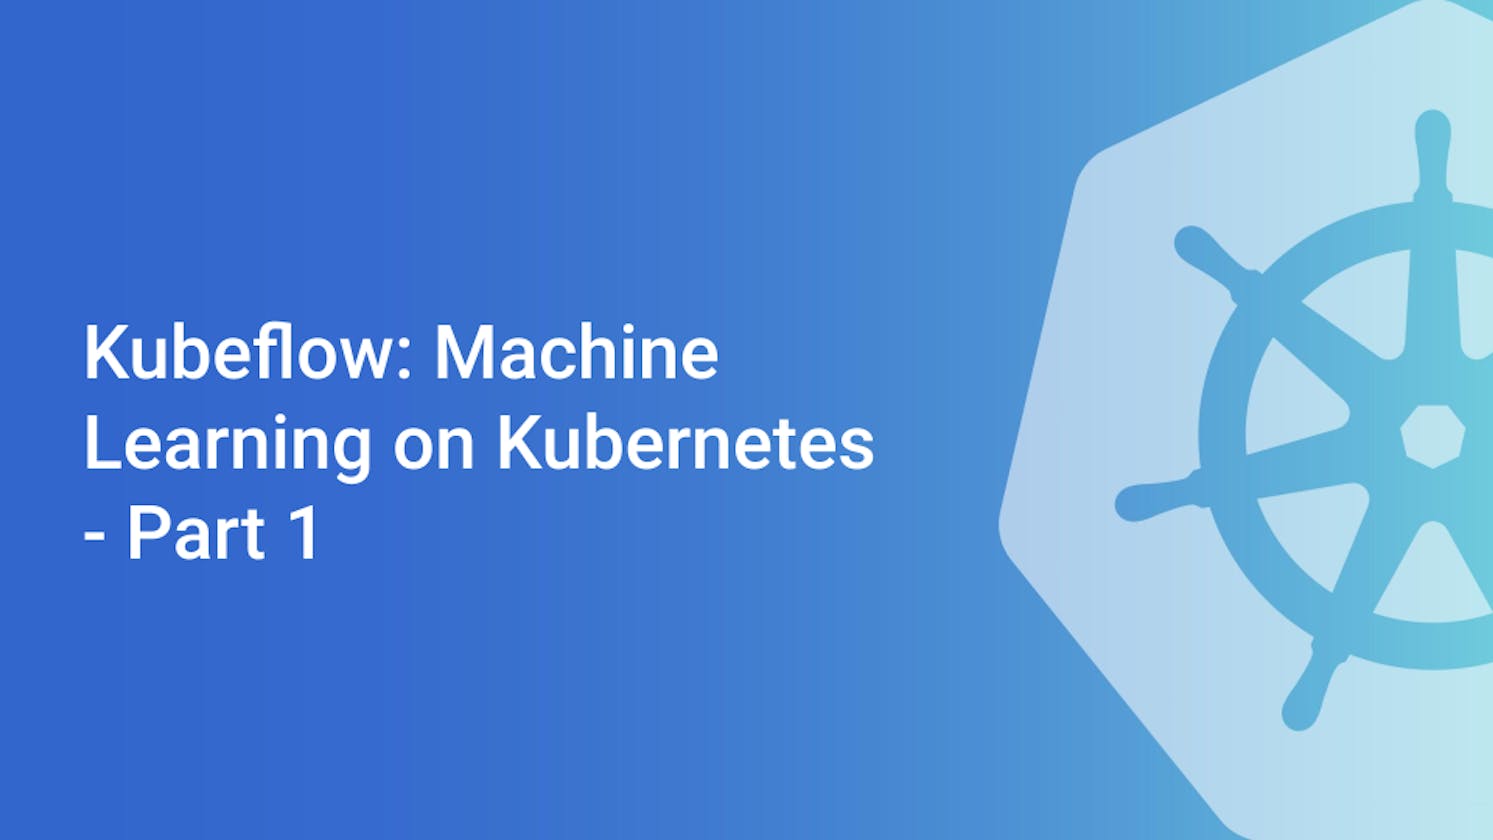 Kubeflow: Machine Learning on Kubernetes - Part 1